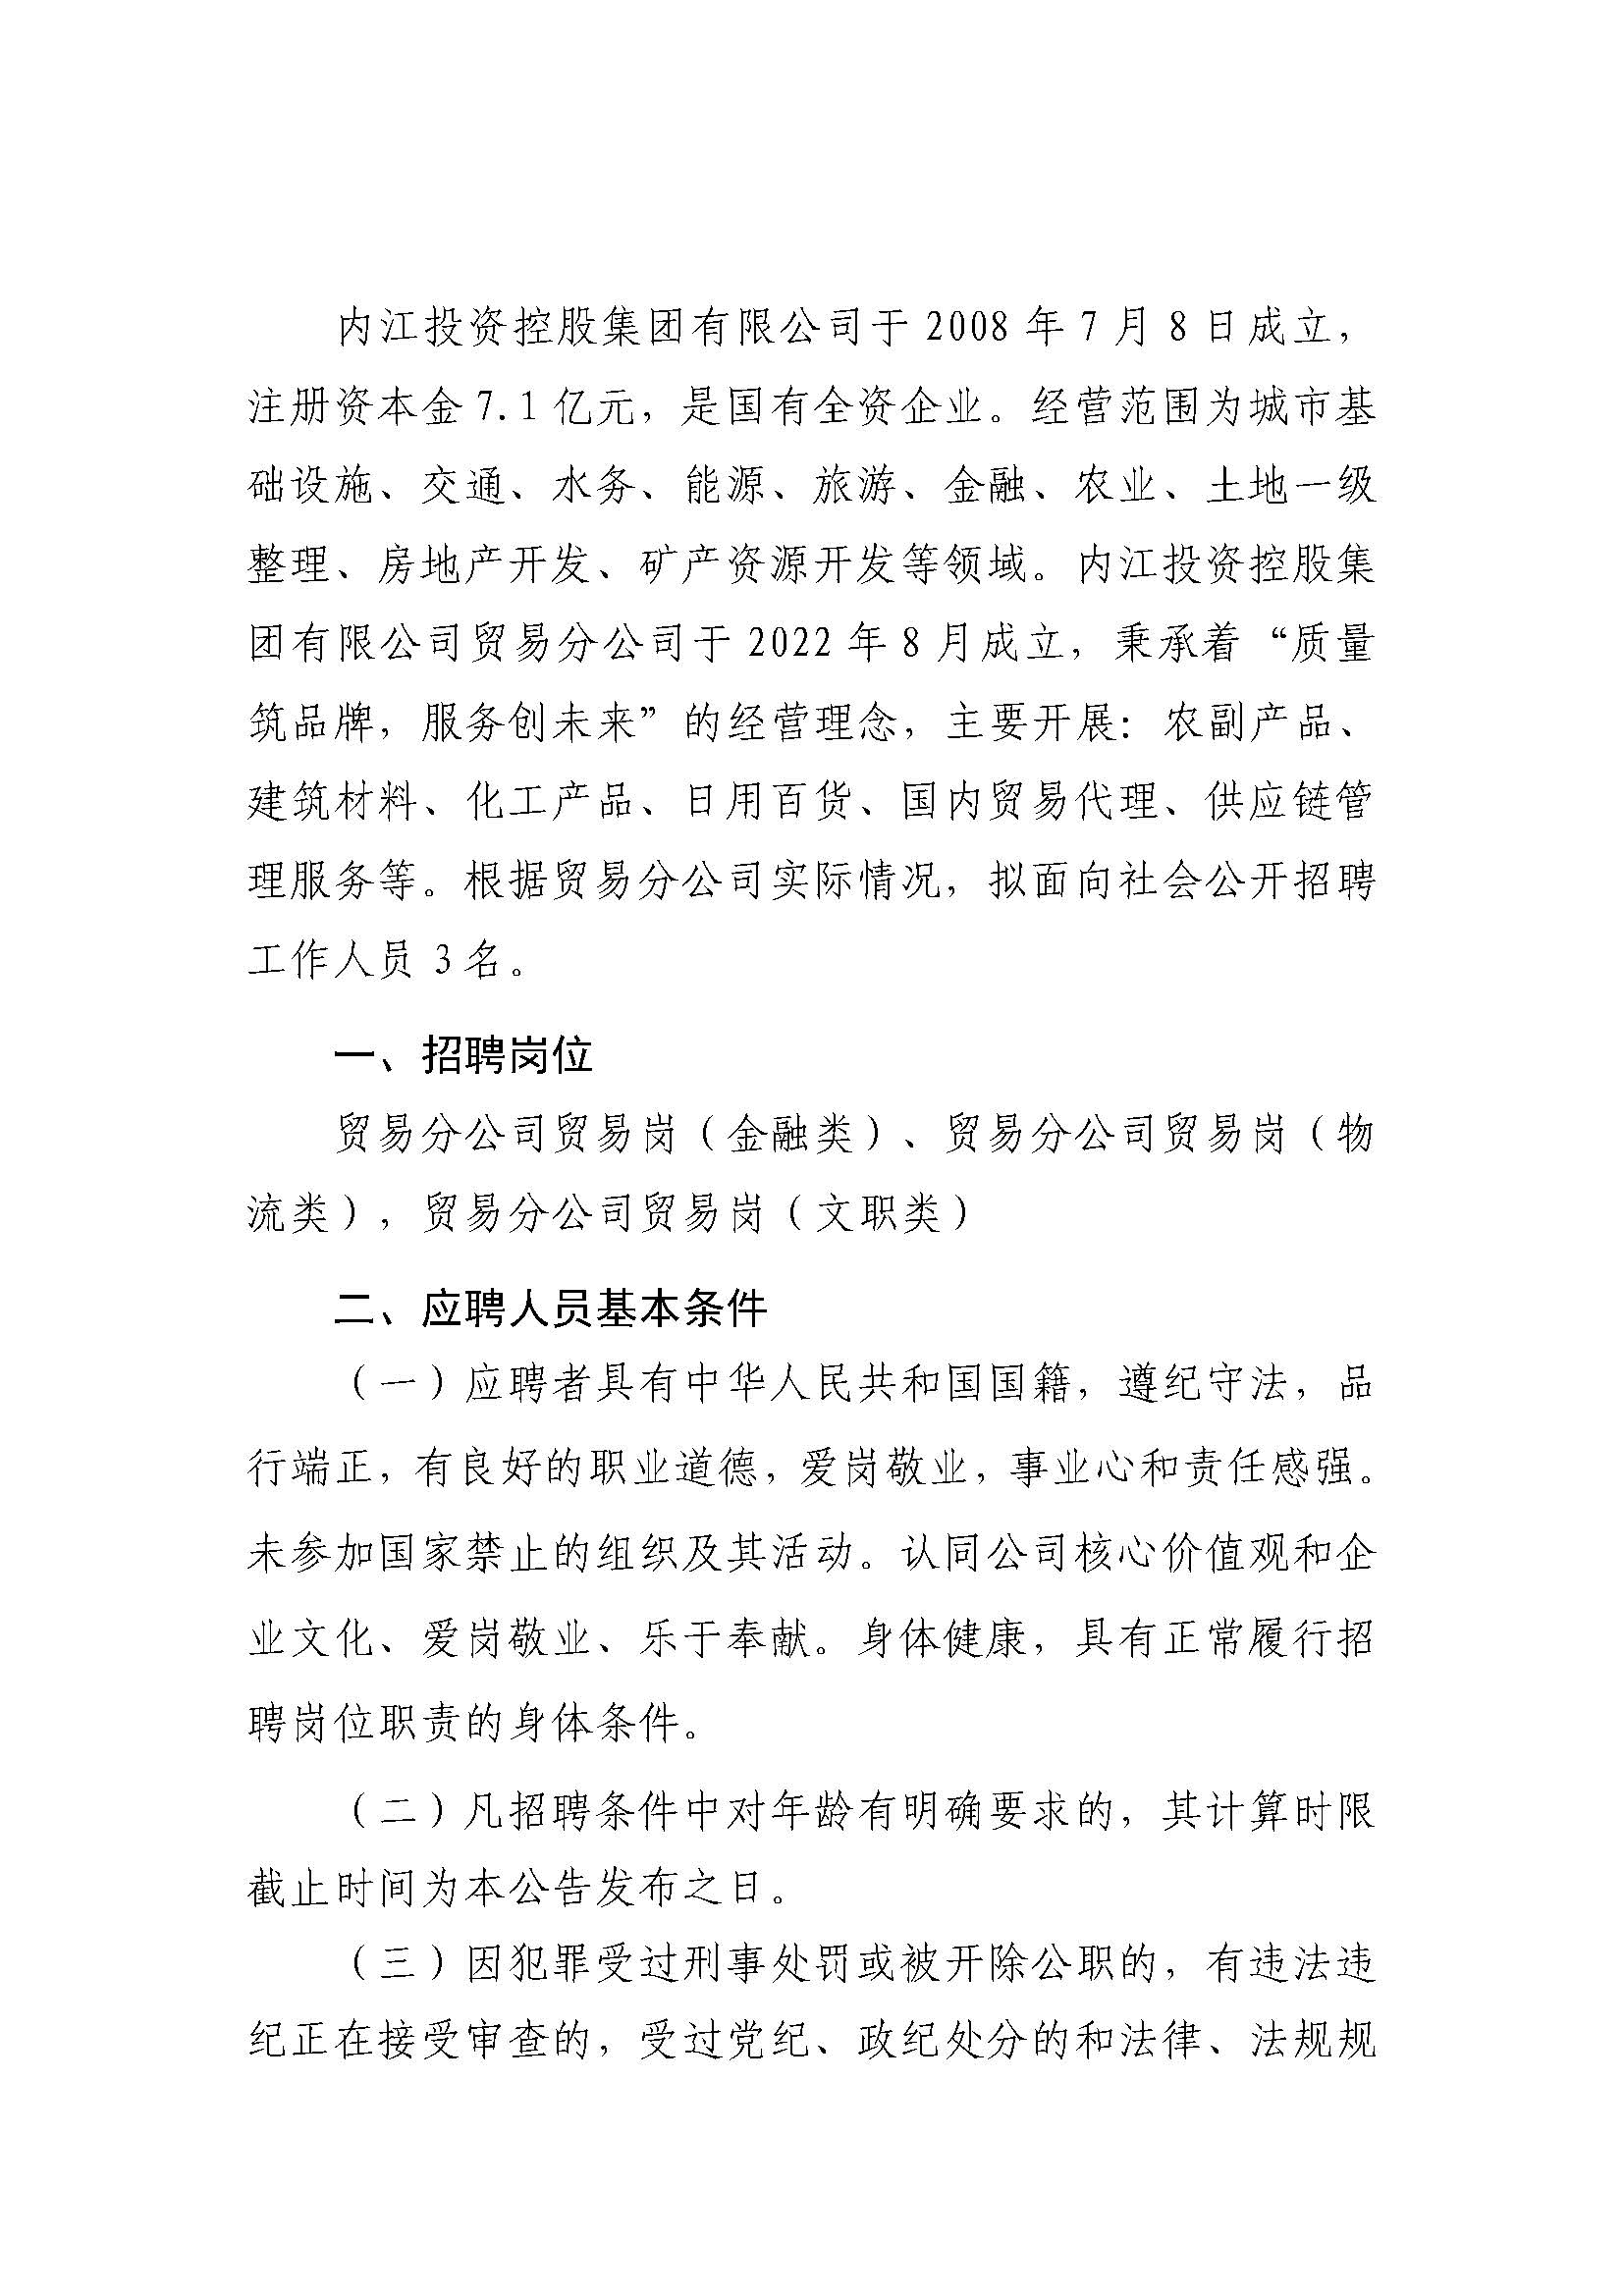 內江投資控股集團有限公司關于2023年社會化招聘的公告